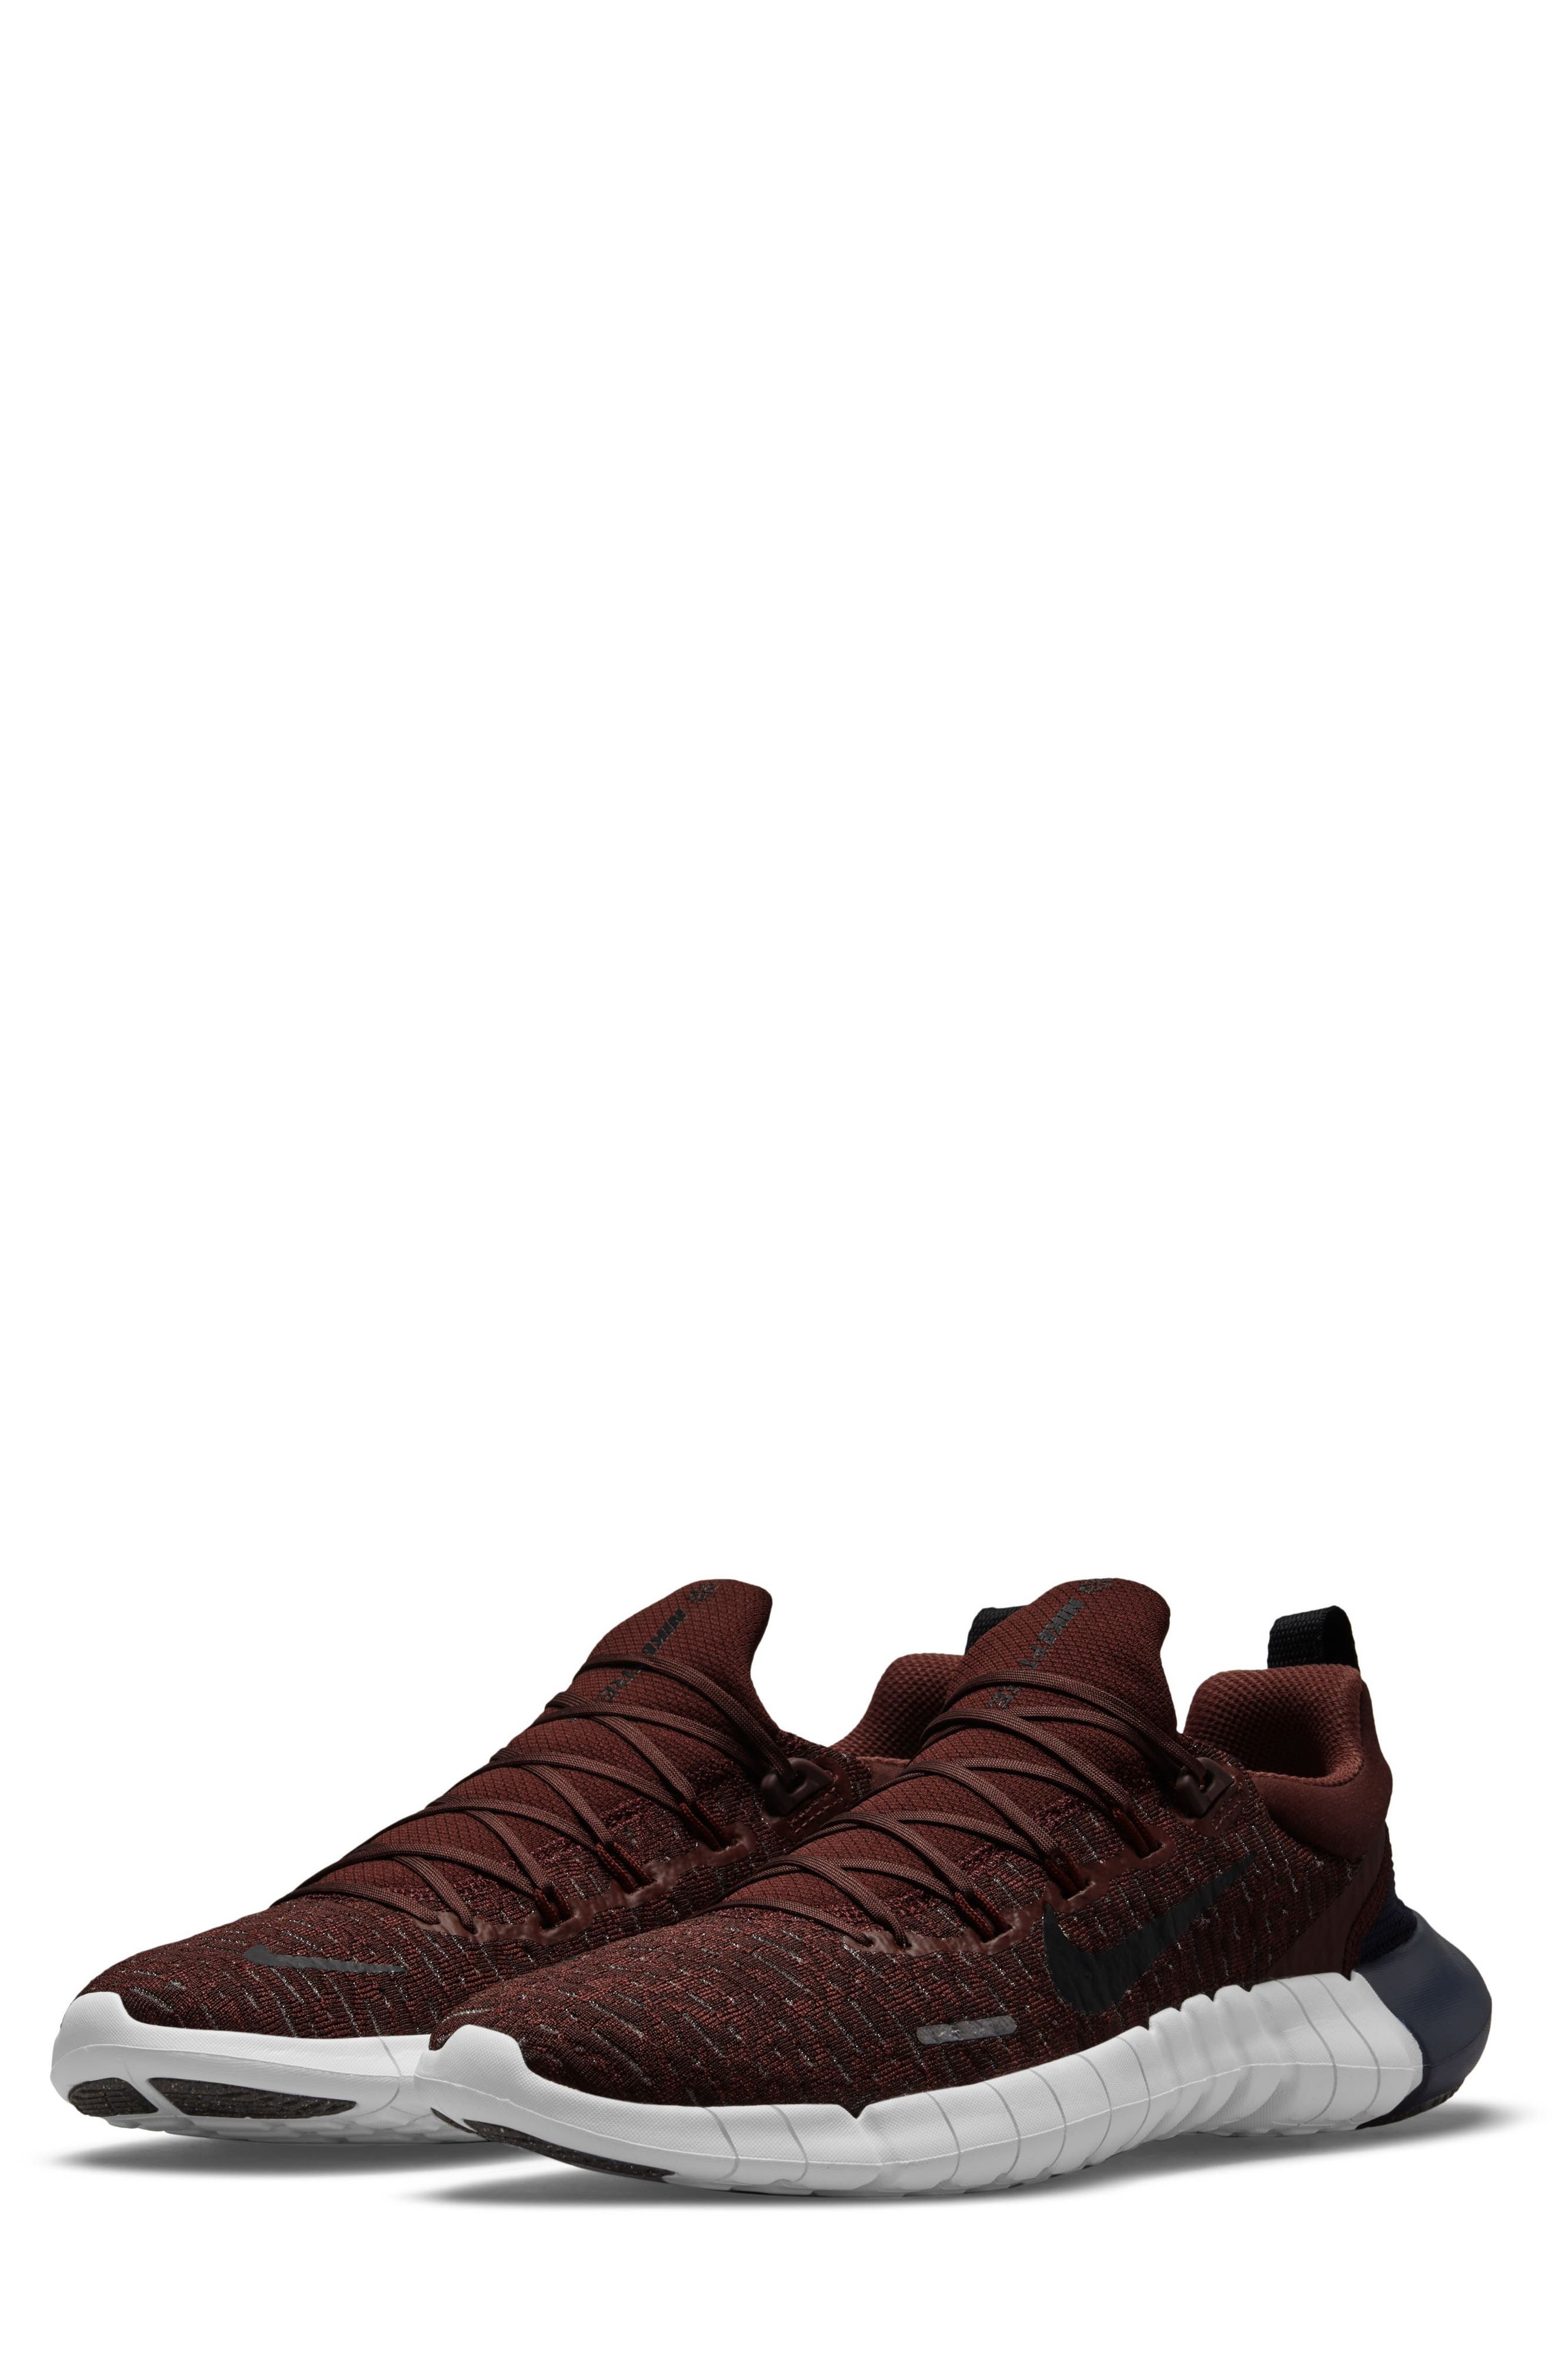 black brown sneakers